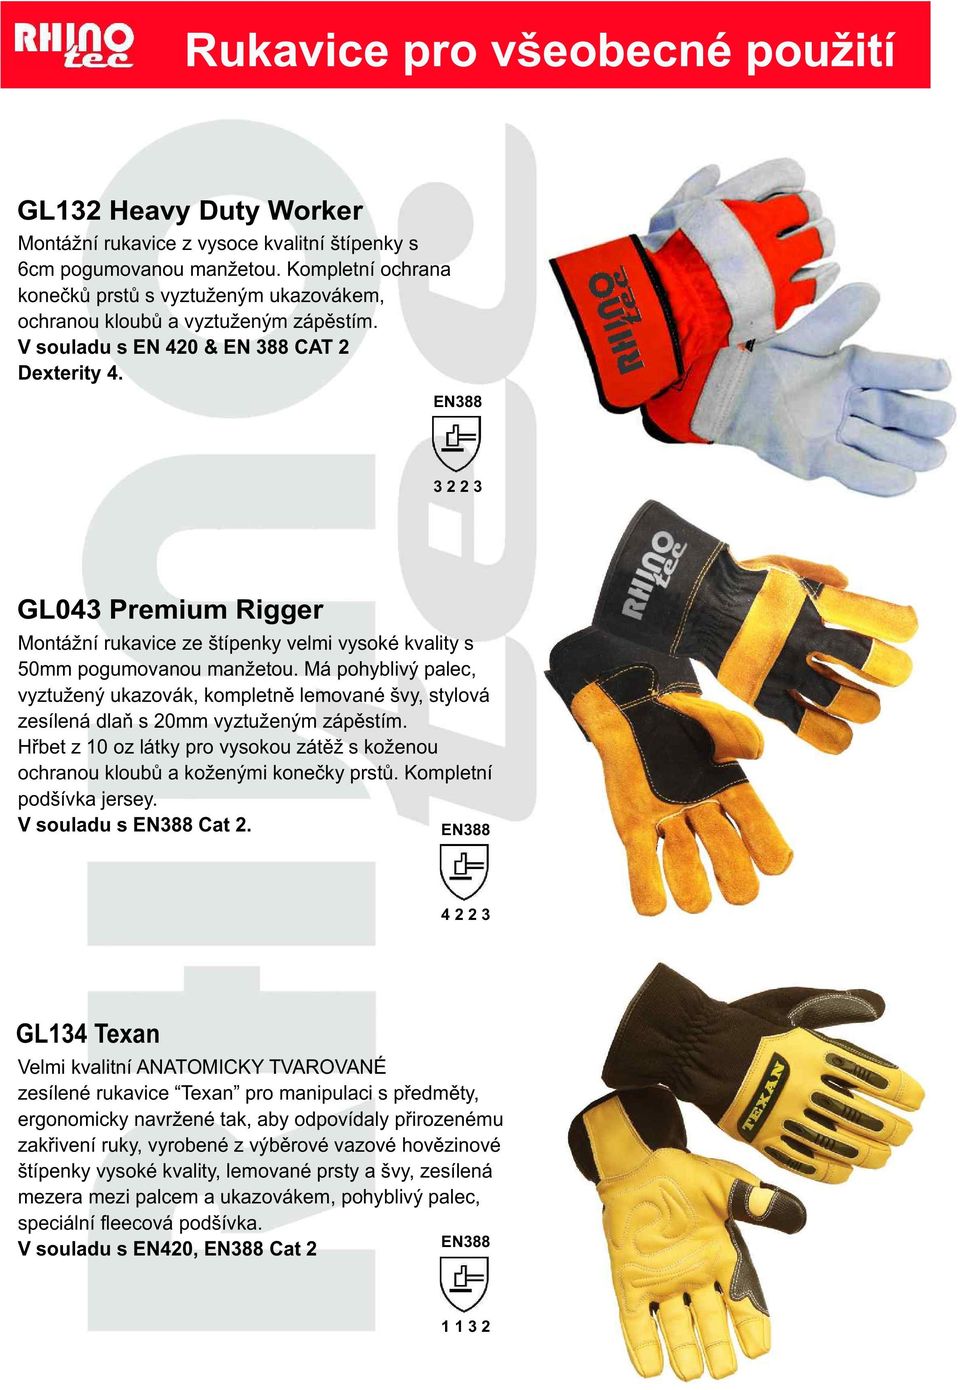 EN388 3 2 2 3 GL043 Premium Rigger Montážní rukavice ze štípenky velmi vysoké kvality s 50mm pogumovanou manžetou.